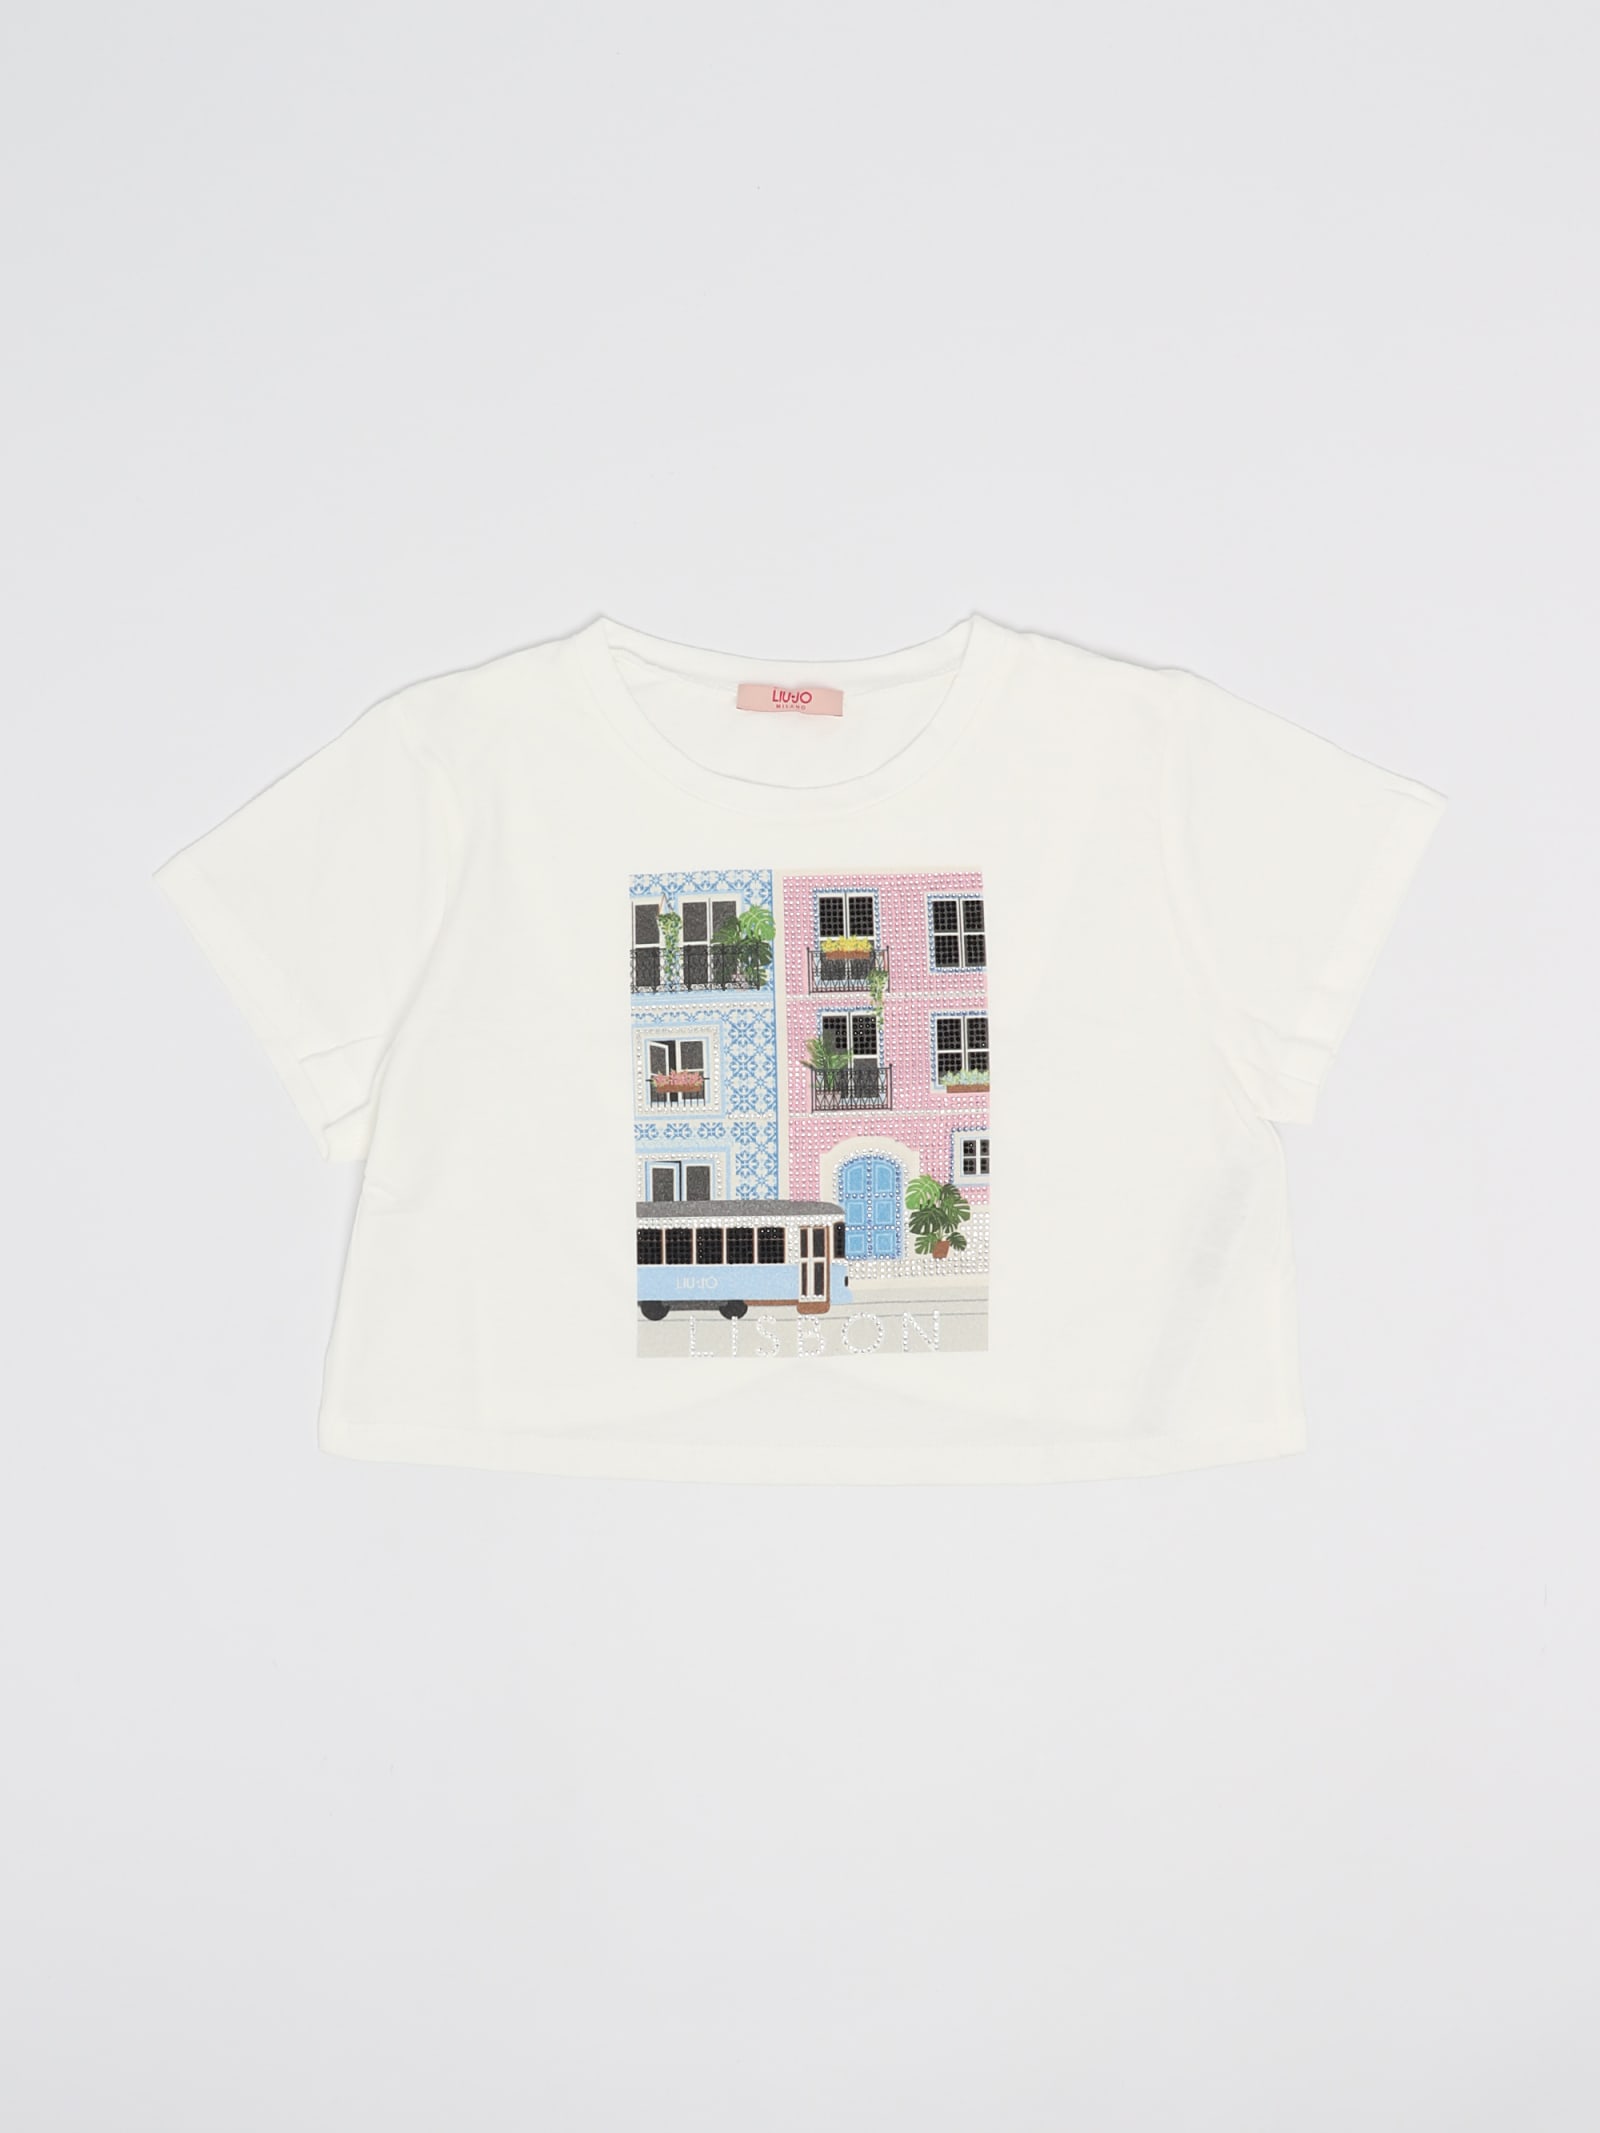 Liu •jo Kids' T-shirt T-shirt In Bianco